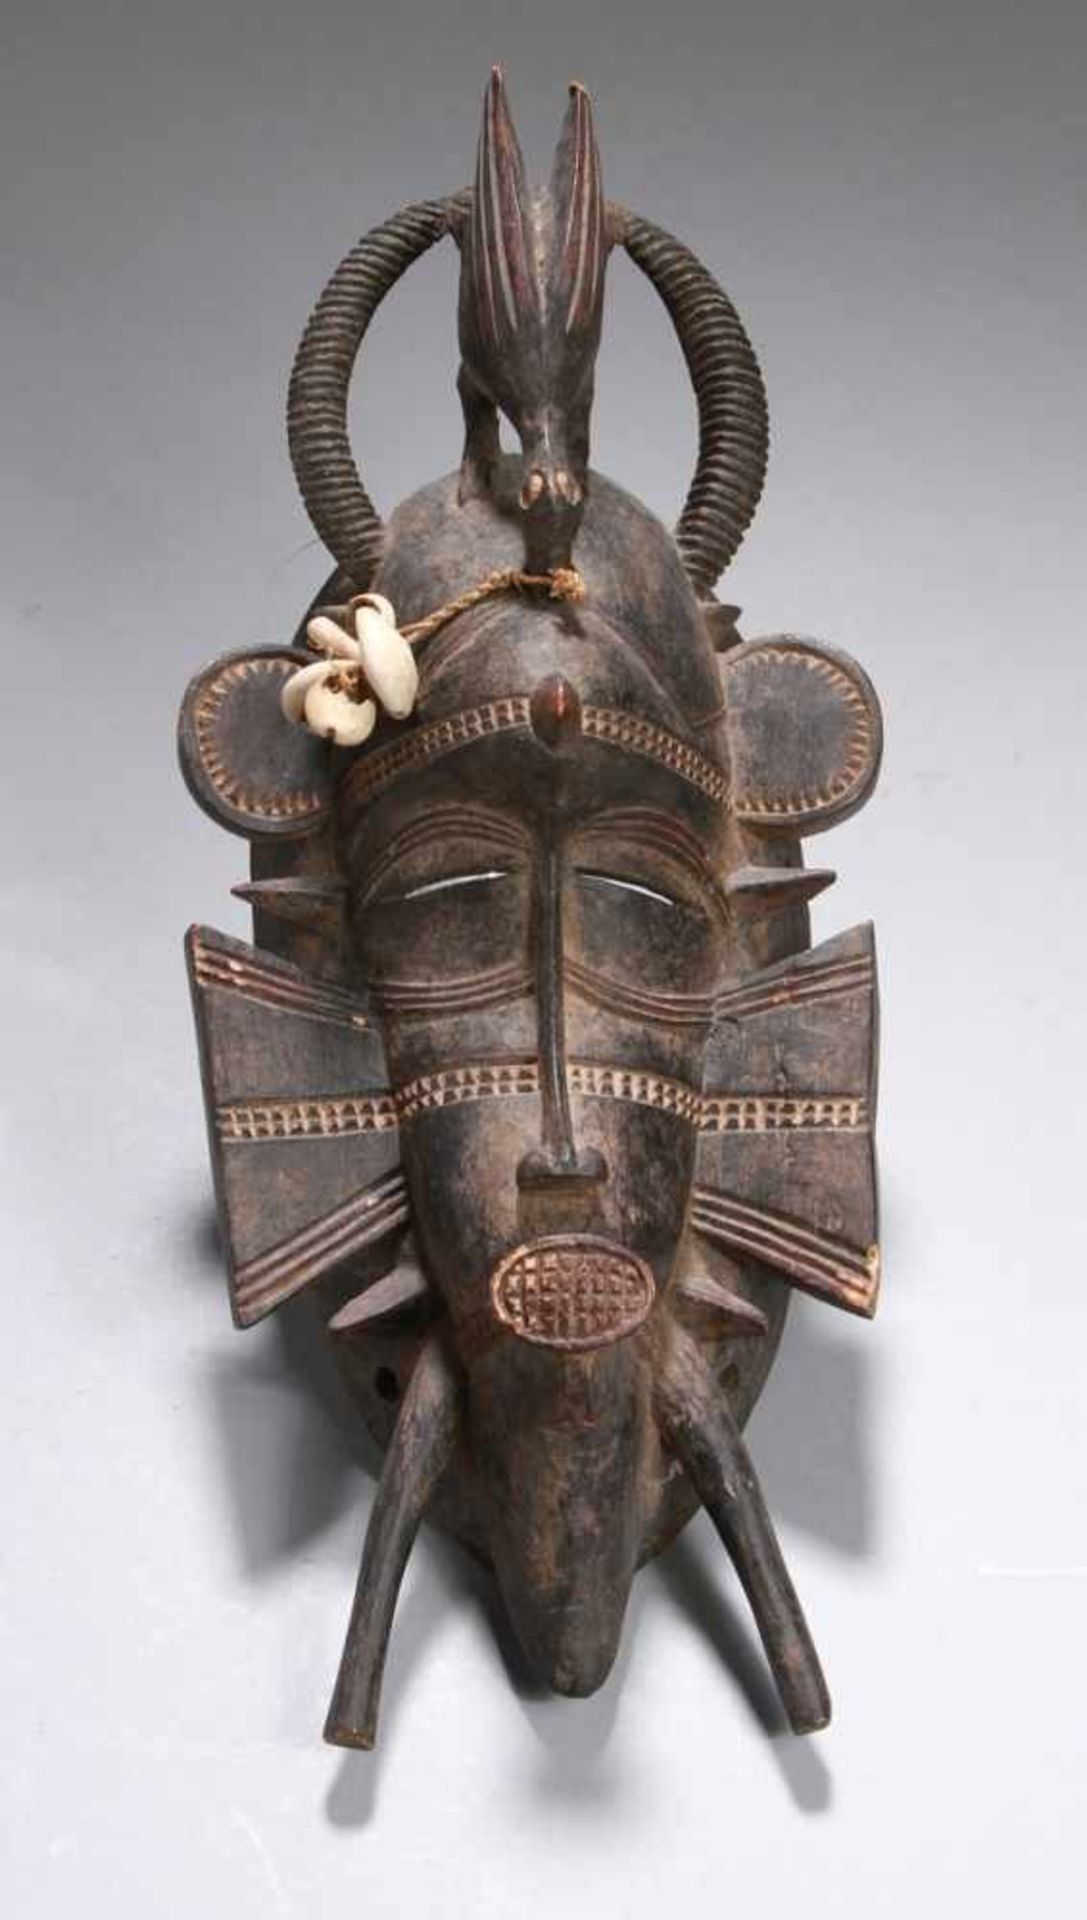 Kpelie-Maske, Senufo, Elfenbeinküste, strenges, kubistisches Gesicht mit kleinen,